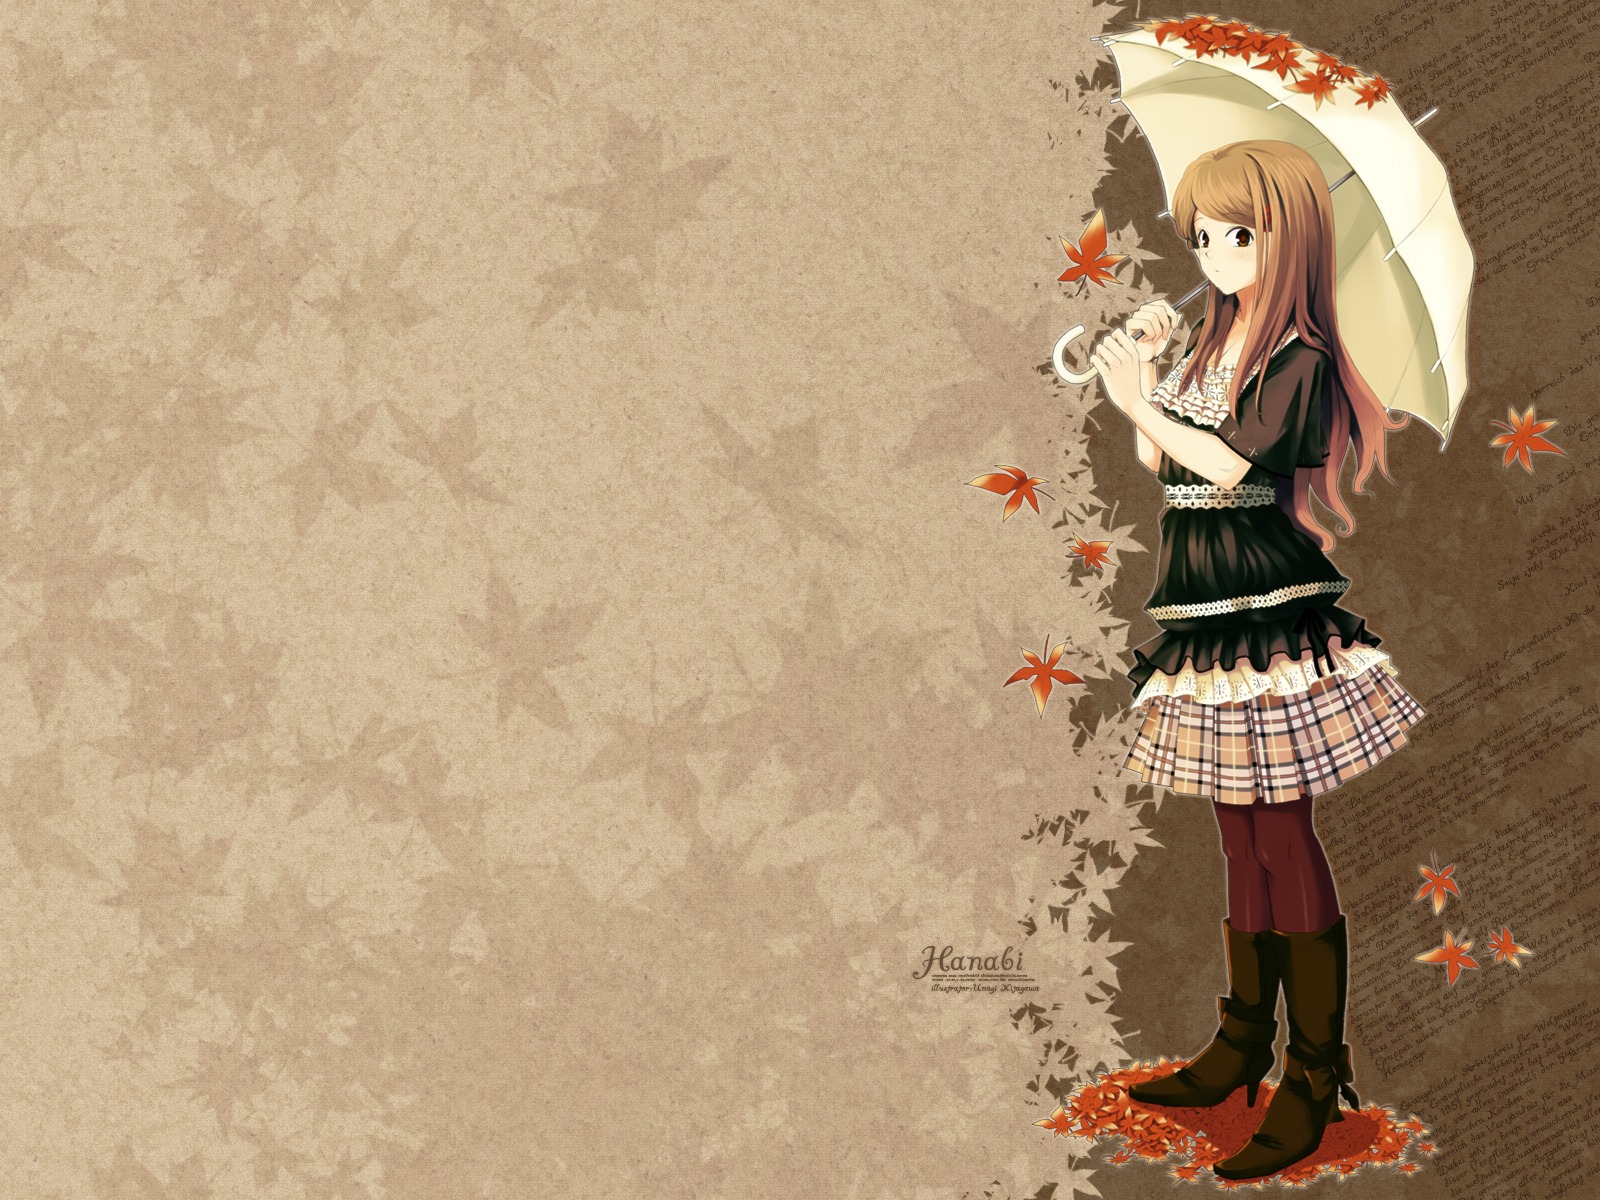 Autumn Anime Images - Free Download on Freepik